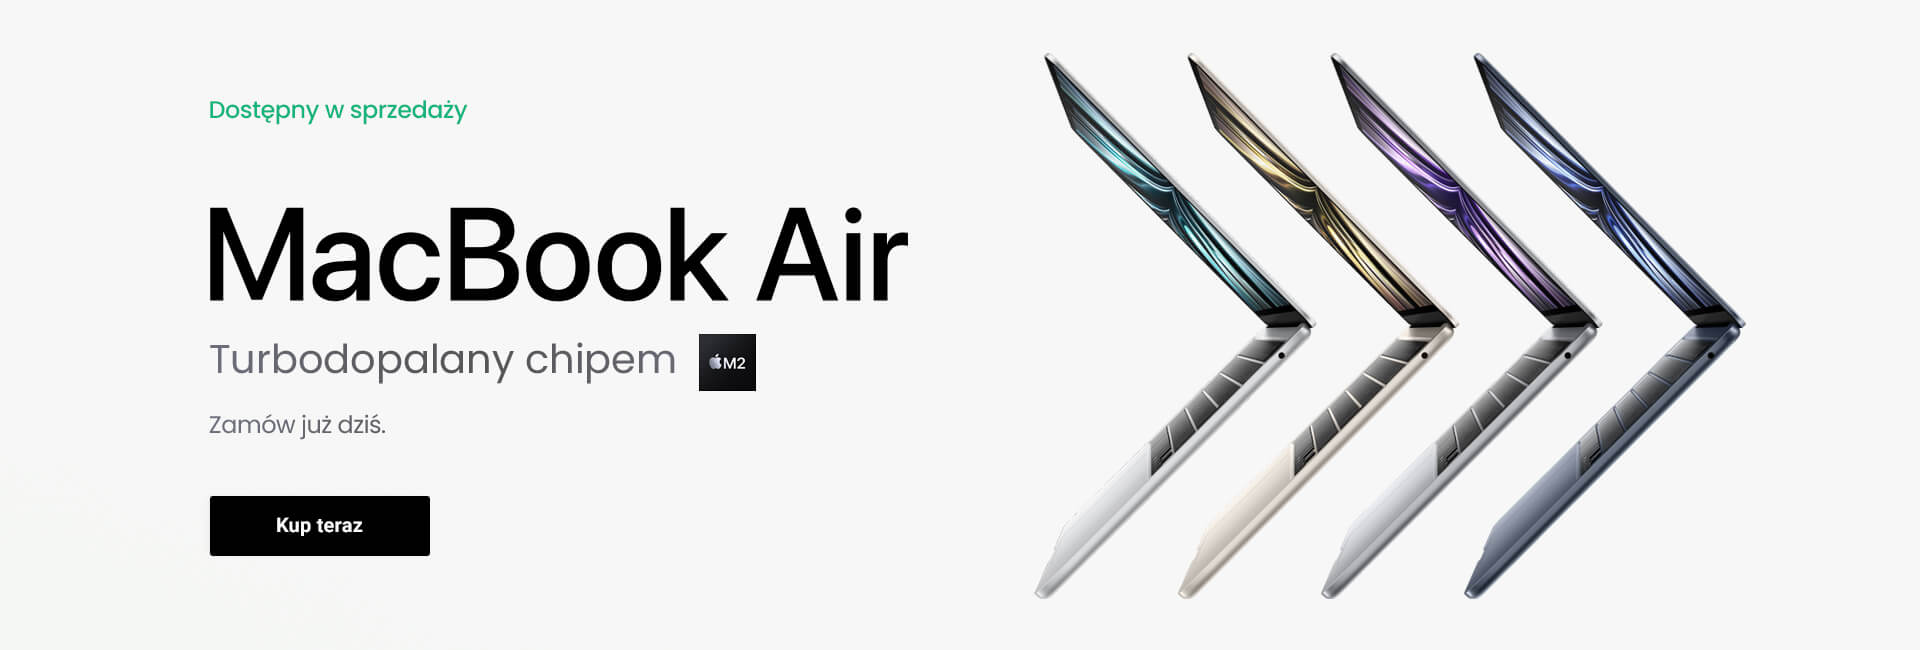 MacBook Air z chipem M2 już dostępny w sprzedaży